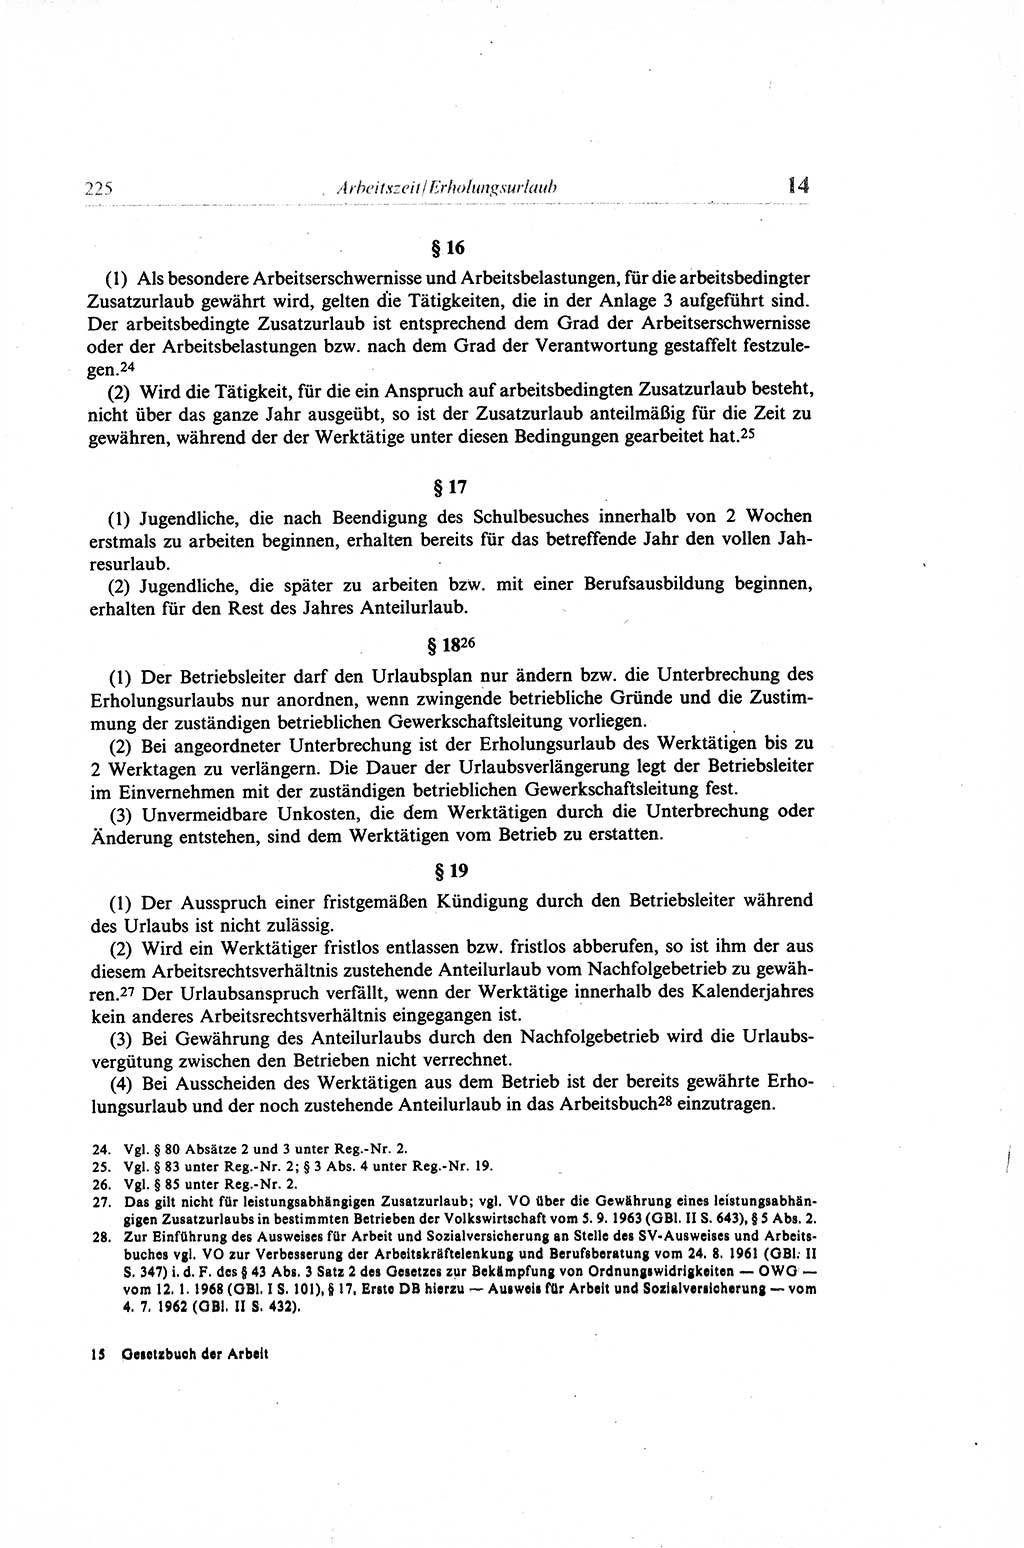 Gesetzbuch der Arbeit (GBA) und andere ausgewählte rechtliche Bestimmungen [Deutsche Demokratische Republik (DDR)] 1968, Seite 225 (GBA DDR 1968, S. 225)